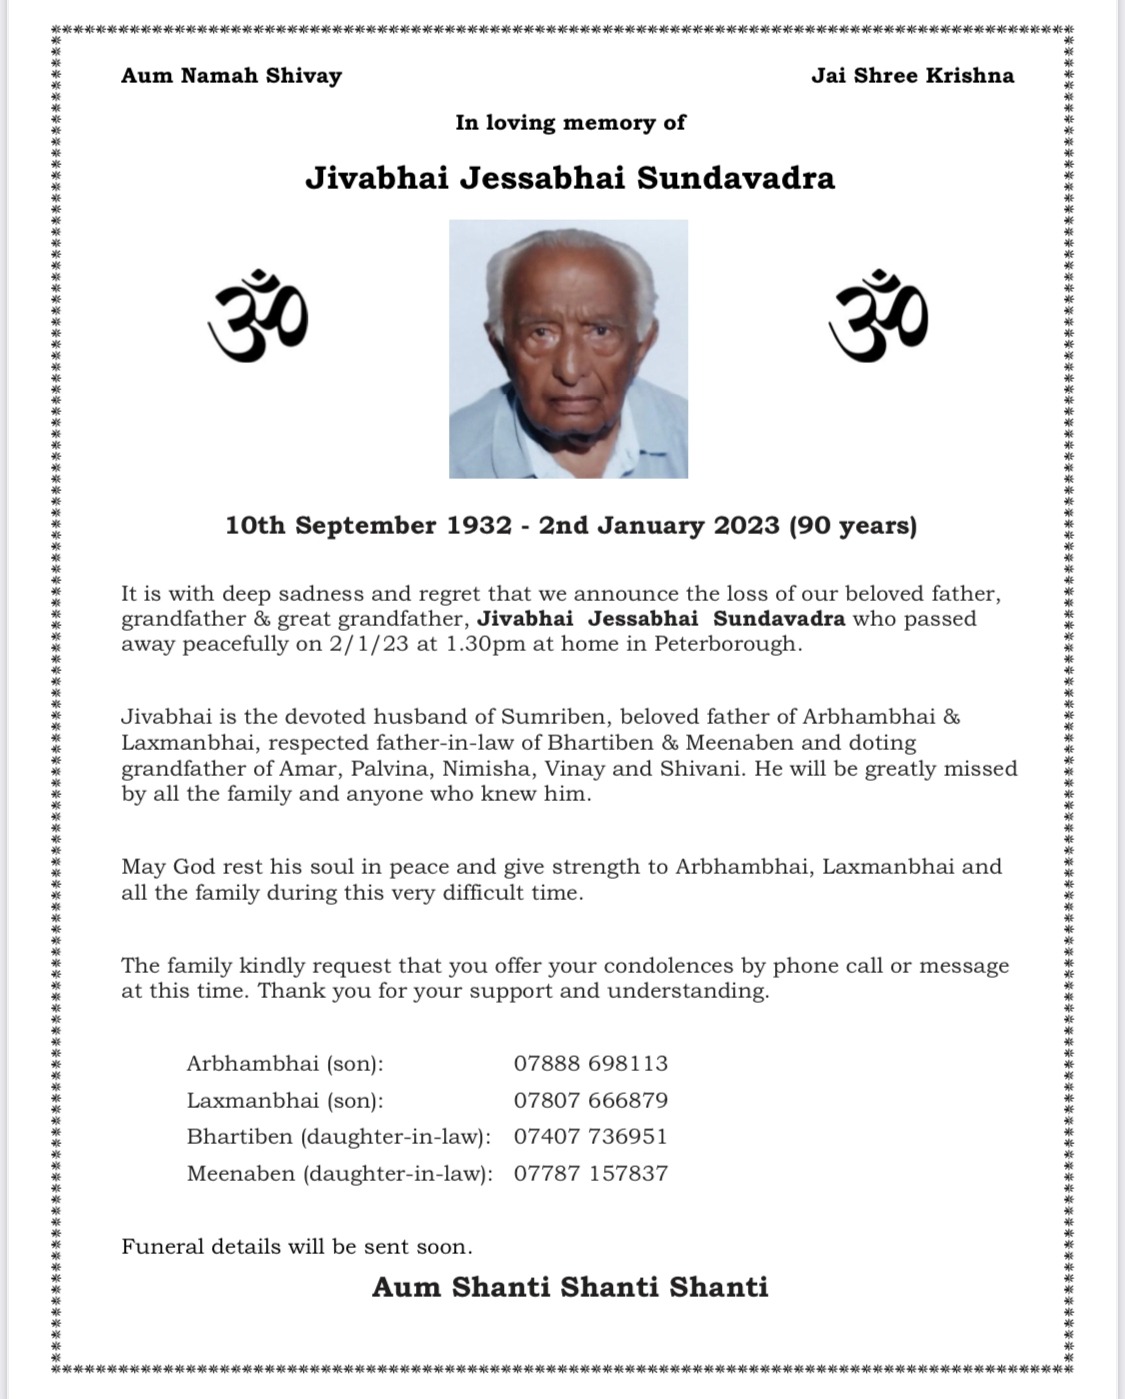 Jivabhai Jessabhai Sundavadra passed away